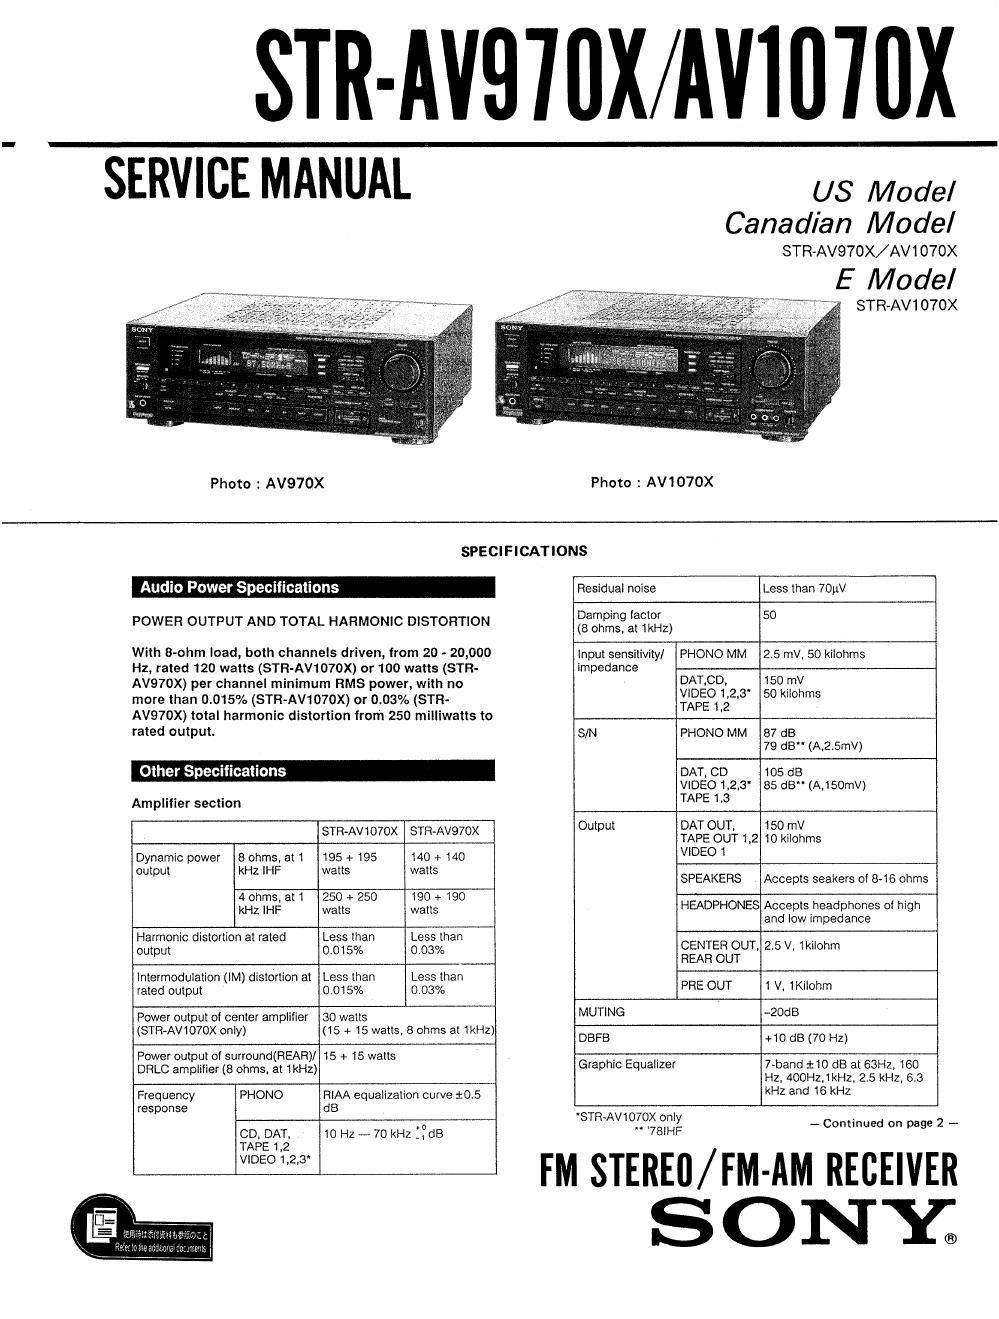 sony str av 1070 x service manual